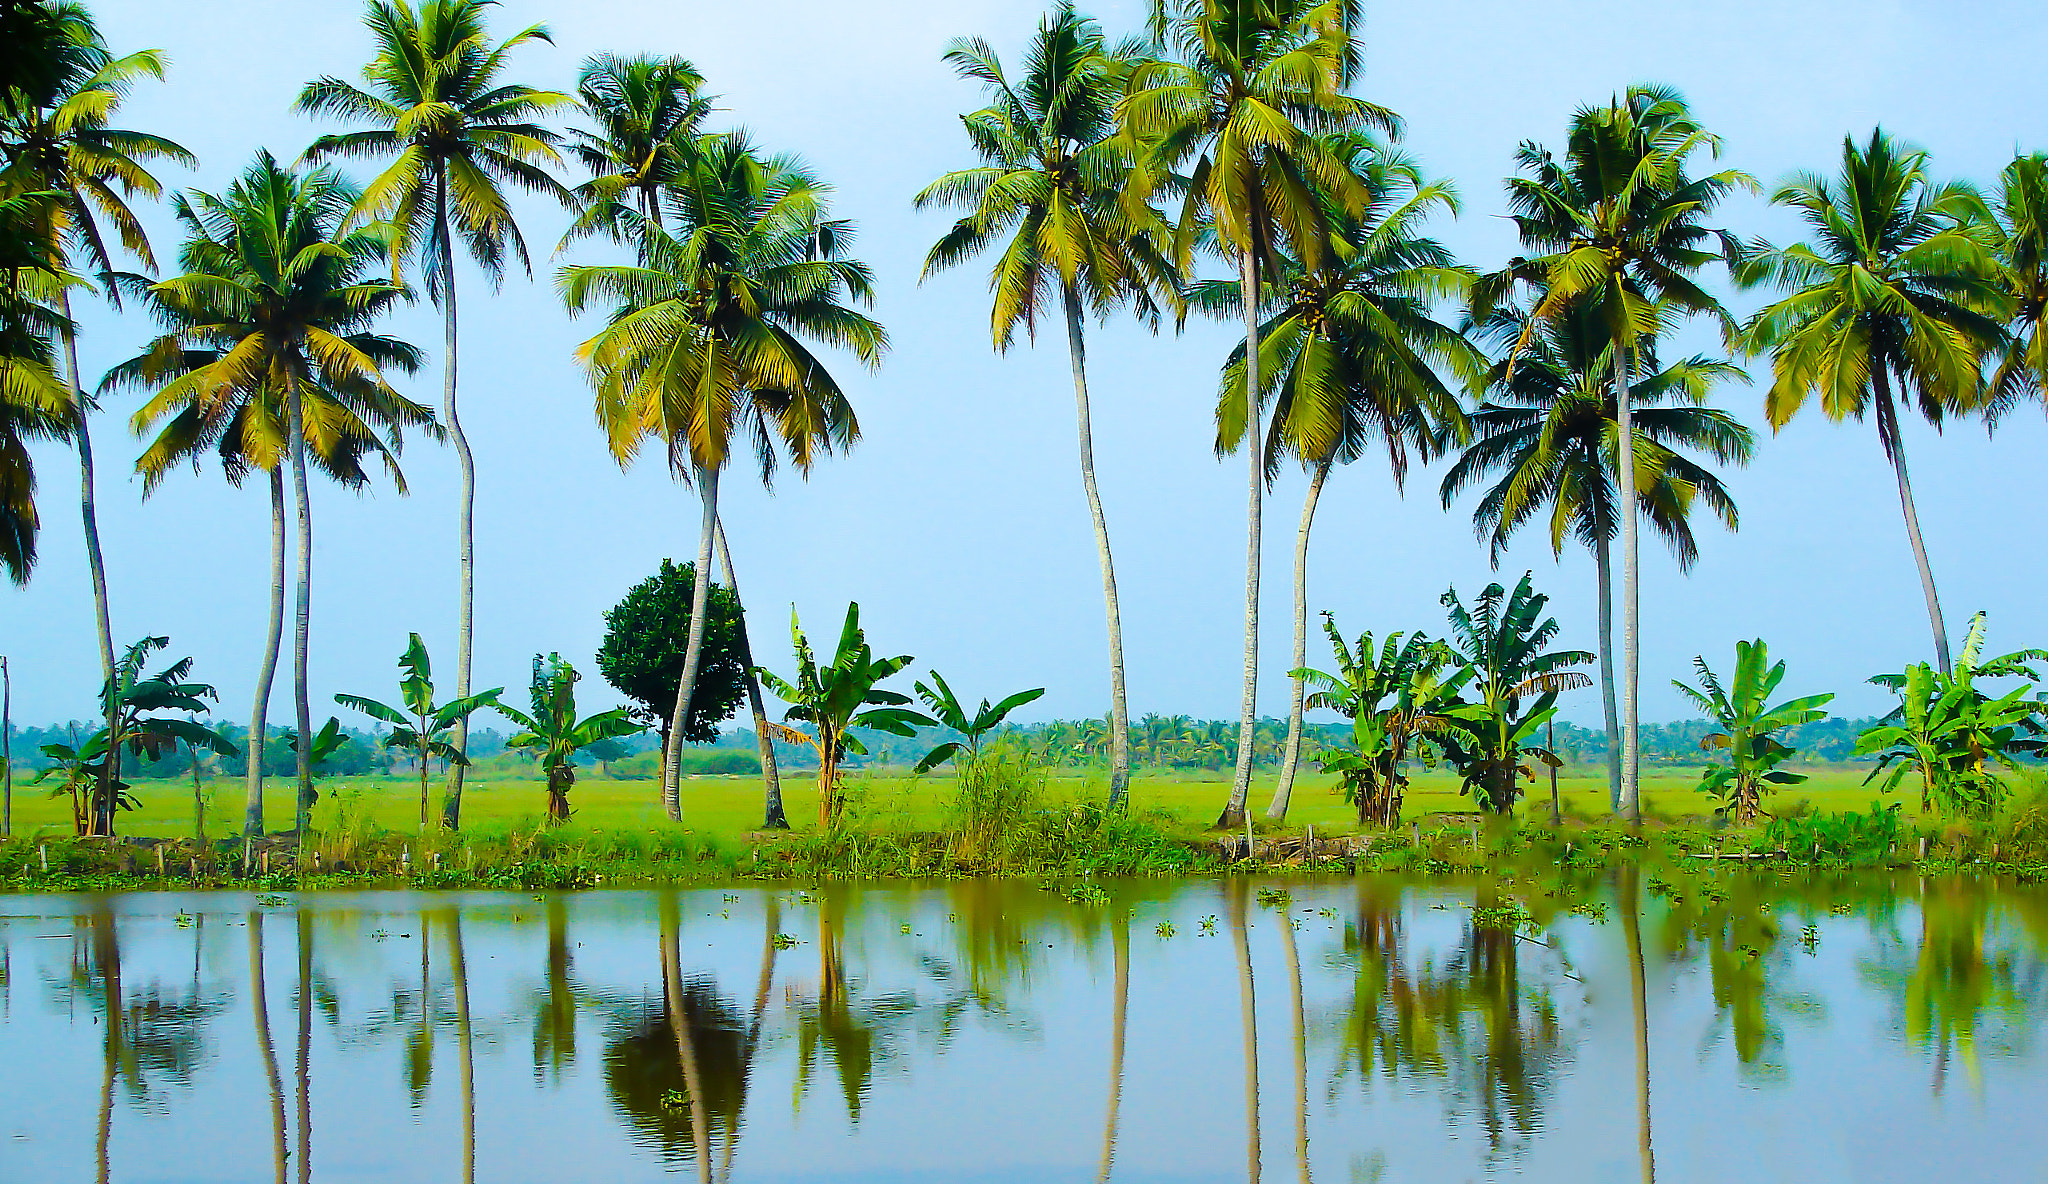 Sony DSC-H1 sample photo. Kerala, india photography